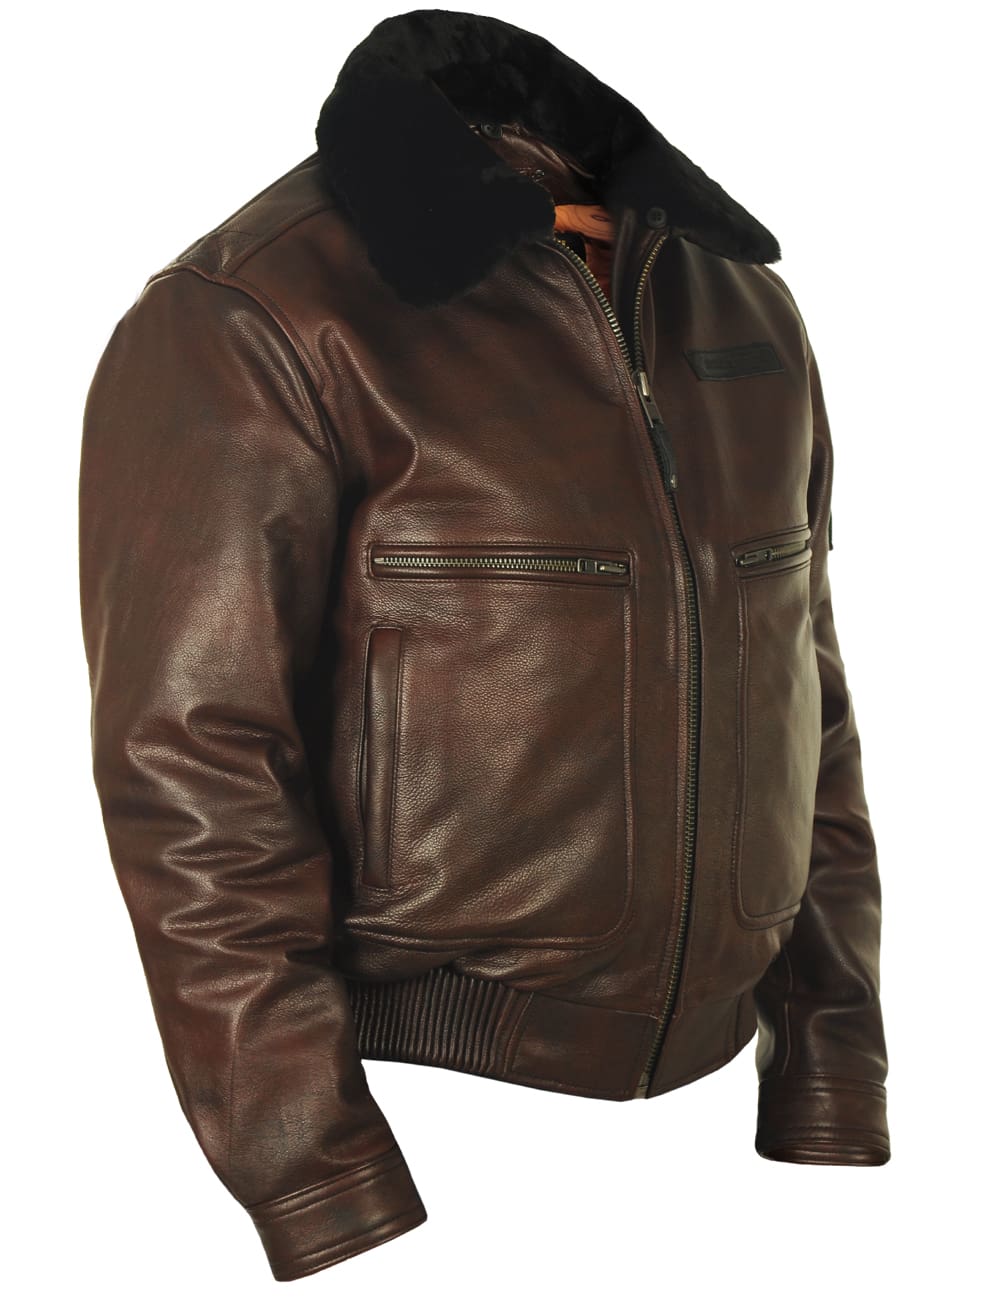 Men's leather bomber jacket – Vintage Leder